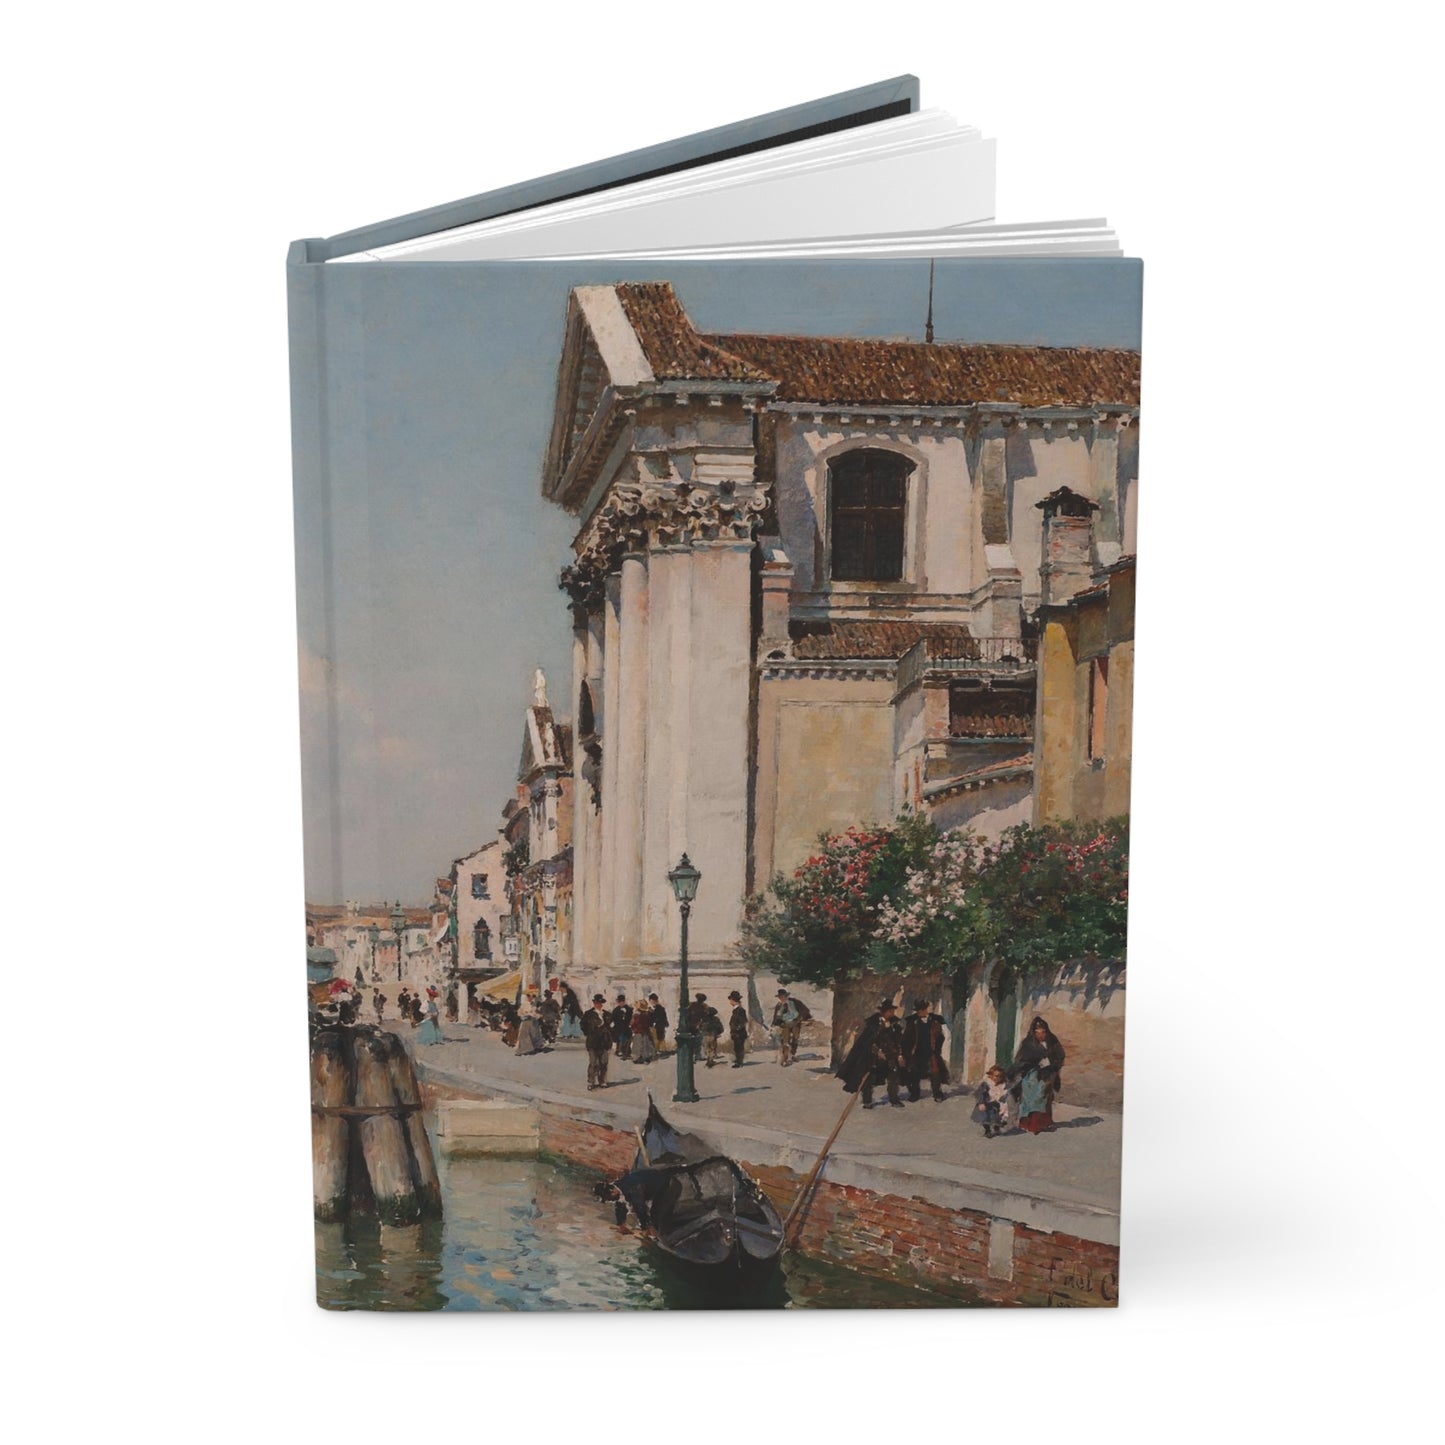 Federico del Campo: "The Giudecca Canal Santa Maria de Rosario" - Hardcover Journal